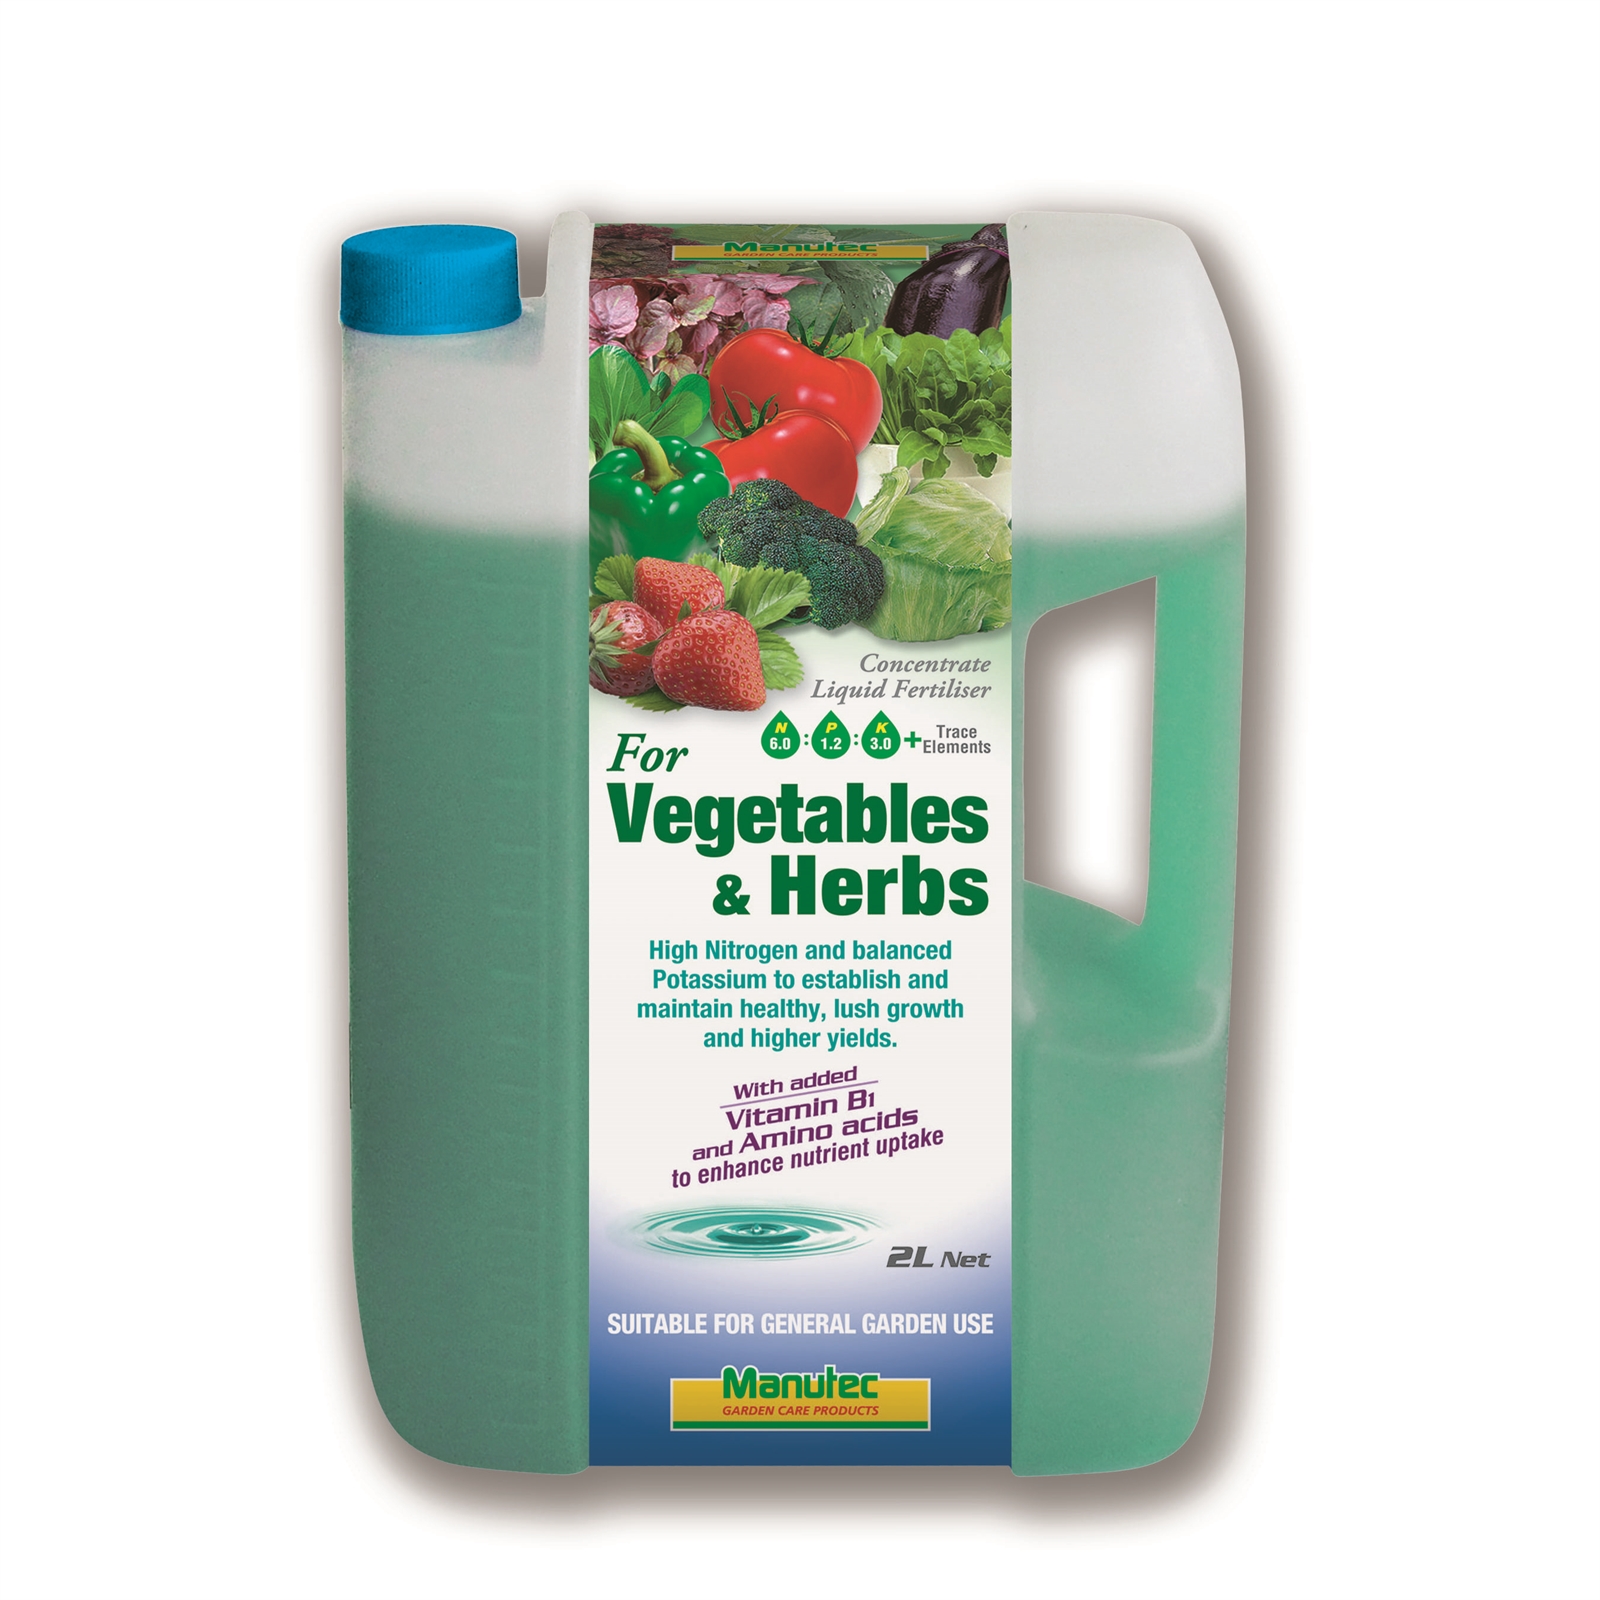 Manutec 2L Vegetables and Herbs Liquid Fertiliser